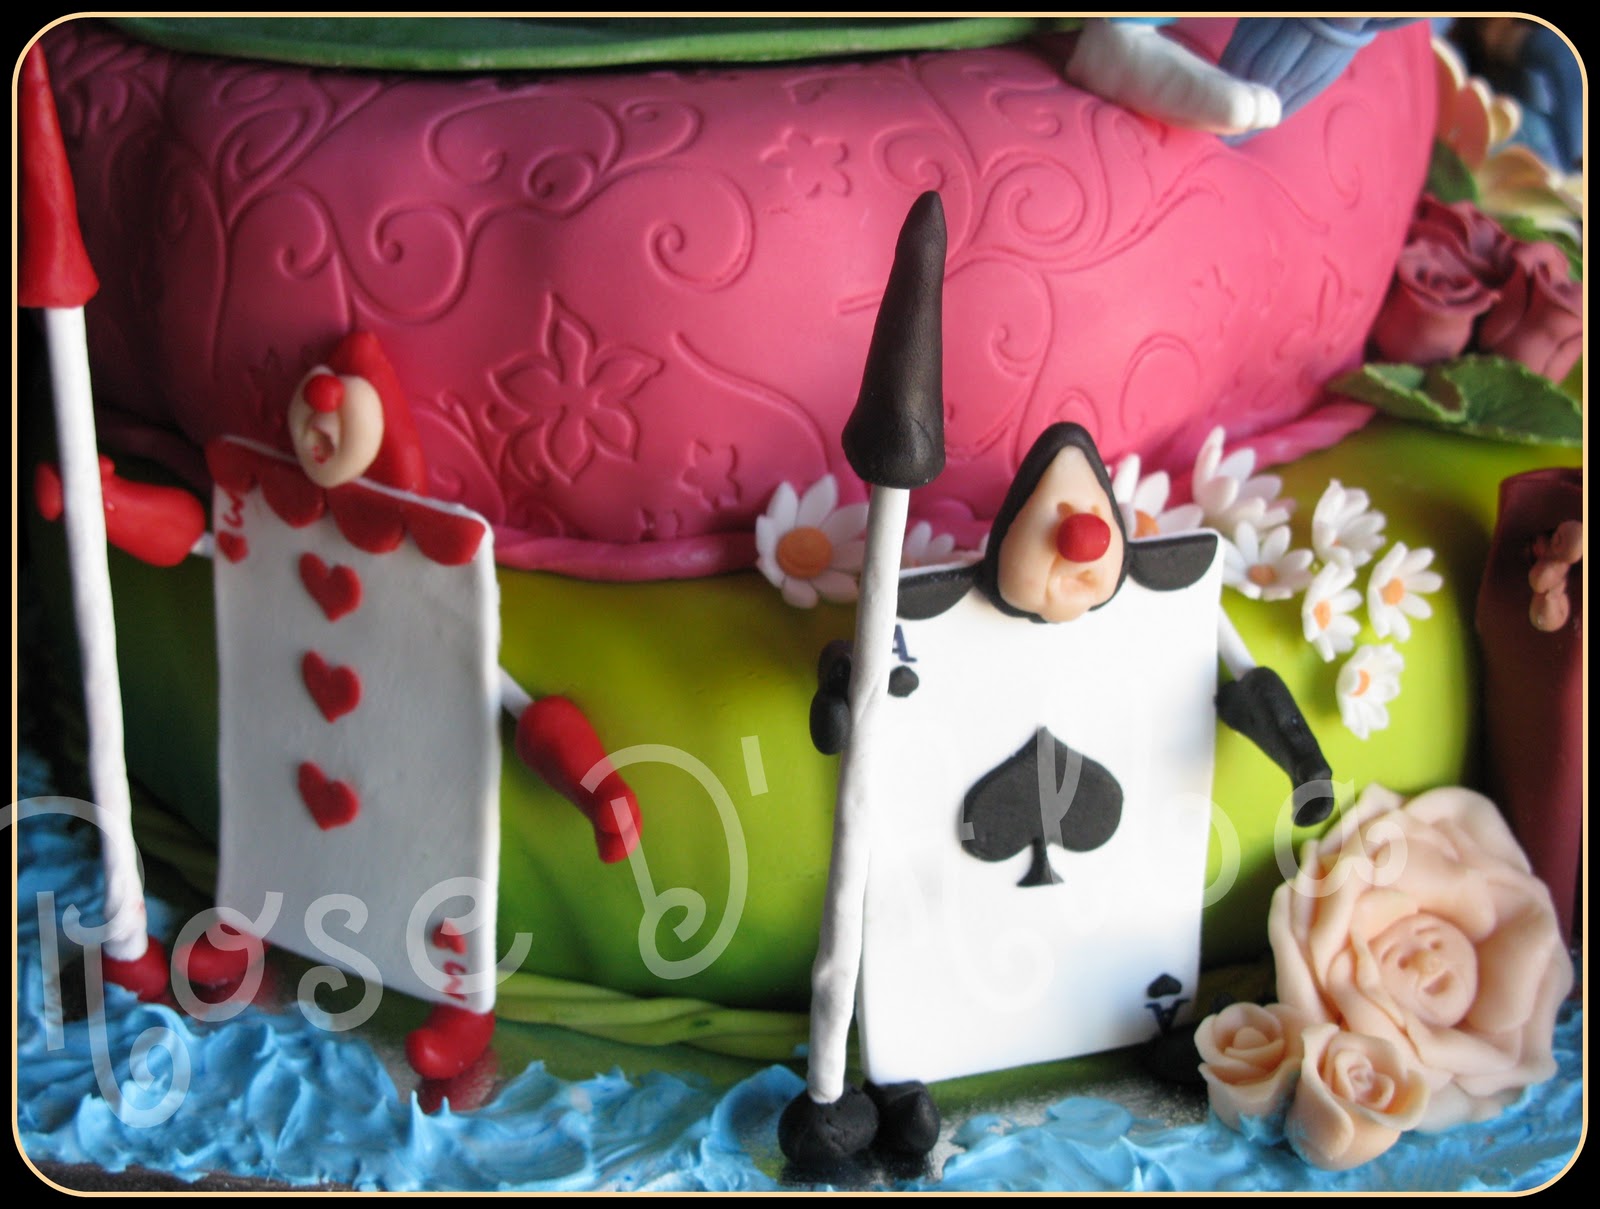 ROSE D' ALBA cake designer: Alice nel Paese delle ...